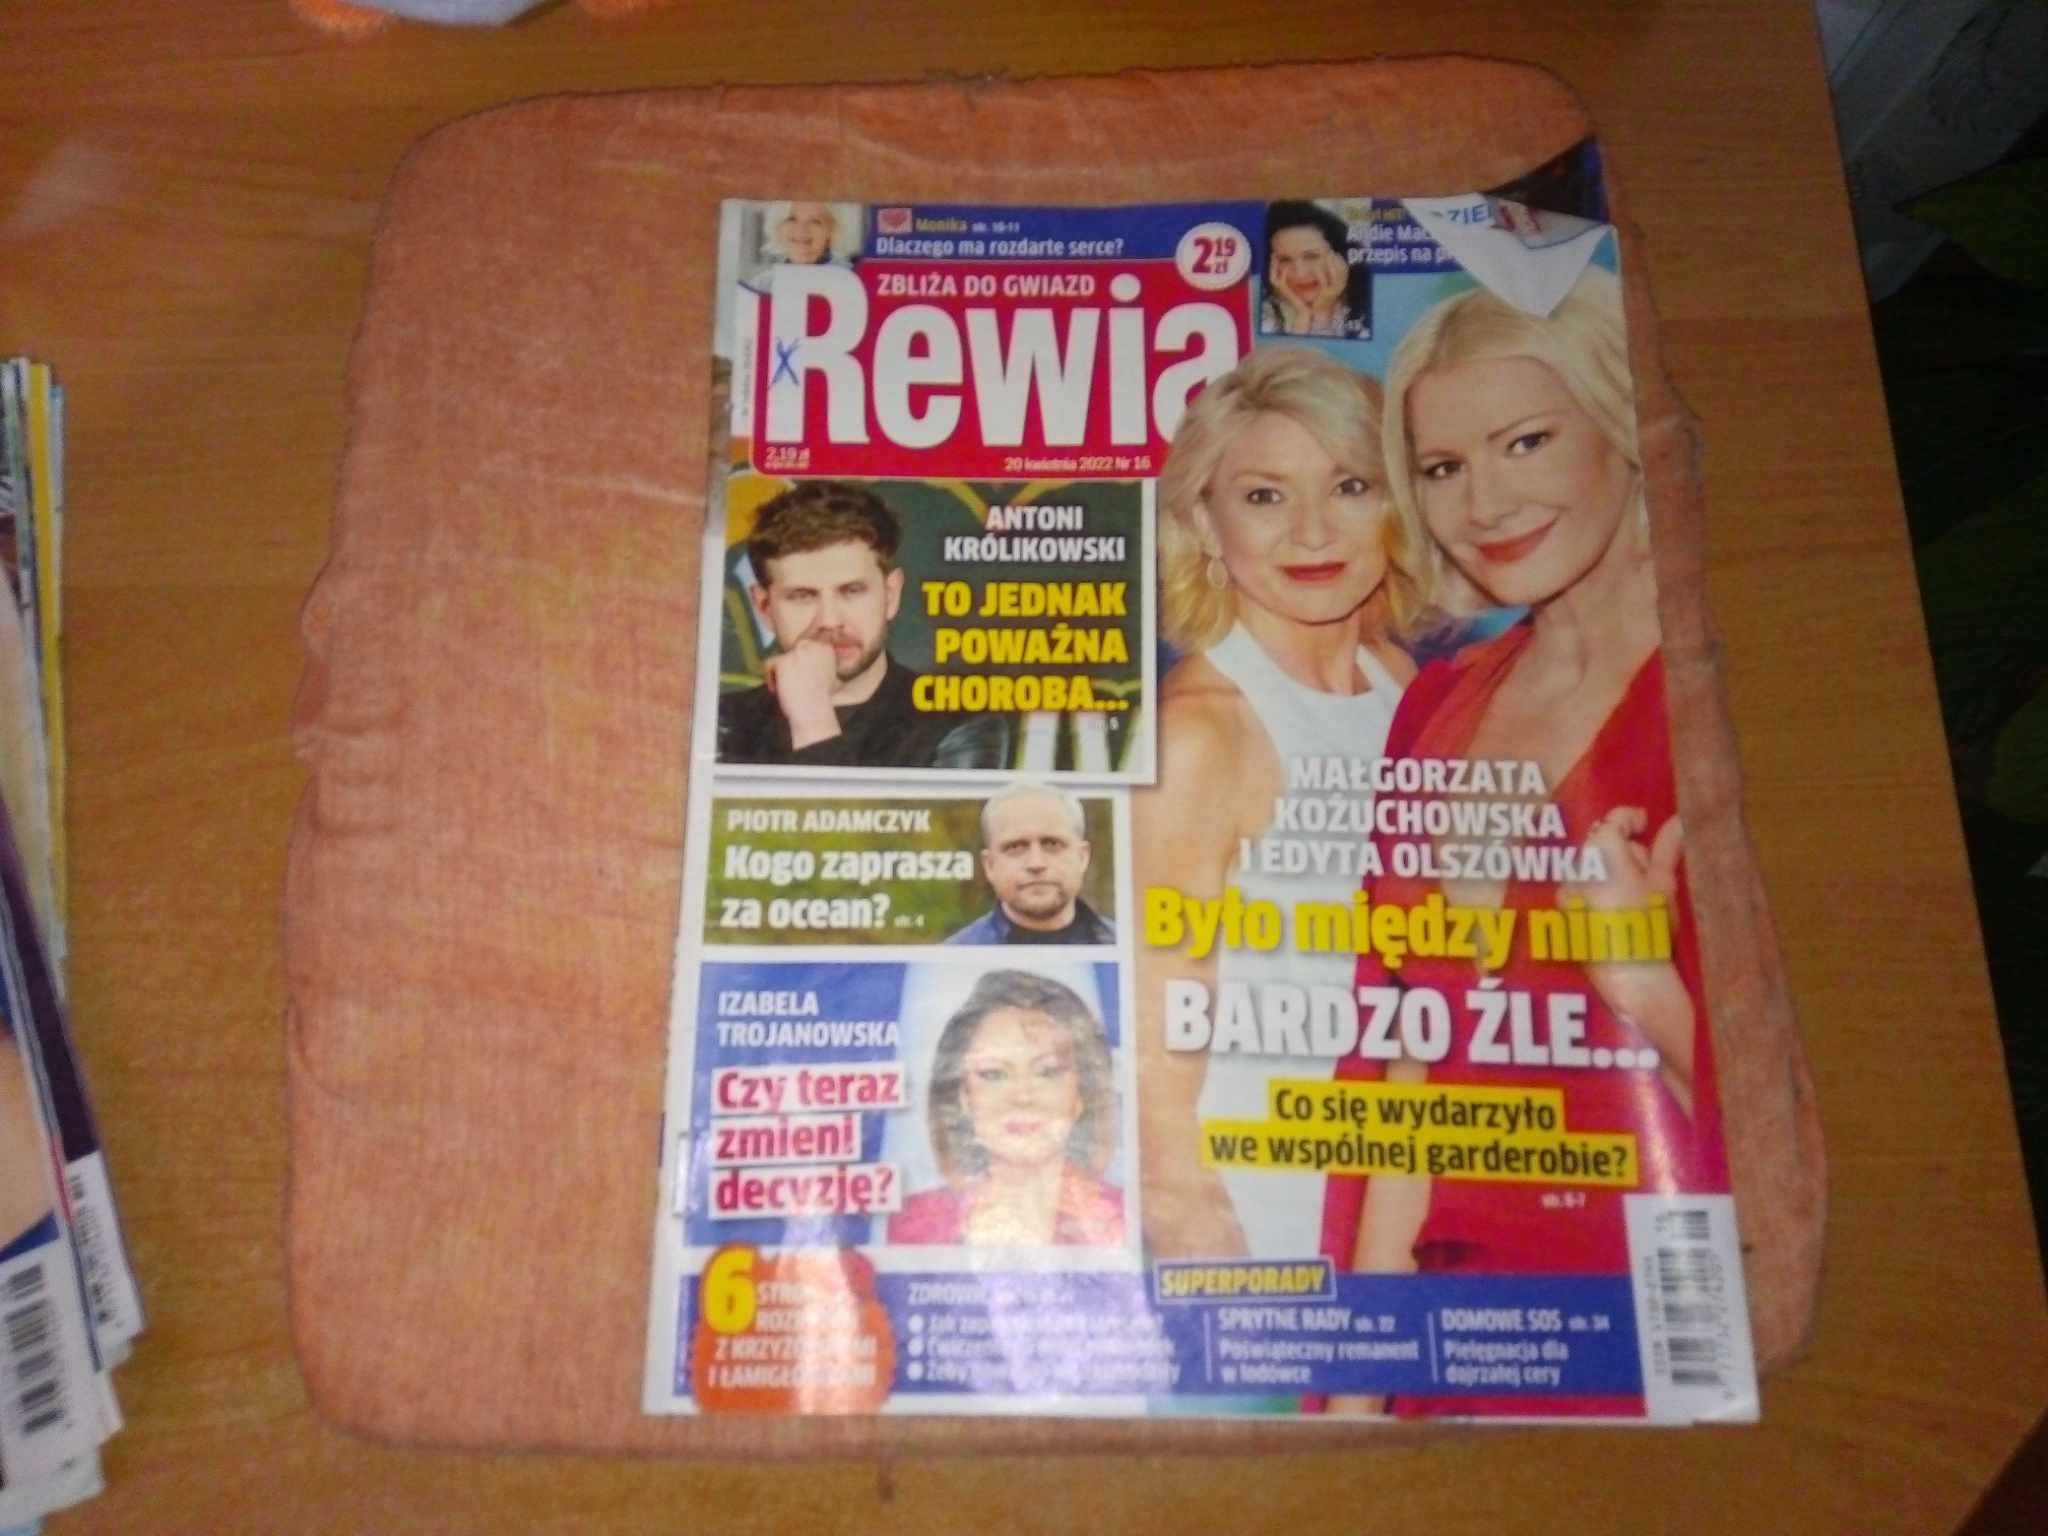 Tygodnik Rewia zbliża do gwiazd nr 16 kwiecień 2022 gazeta